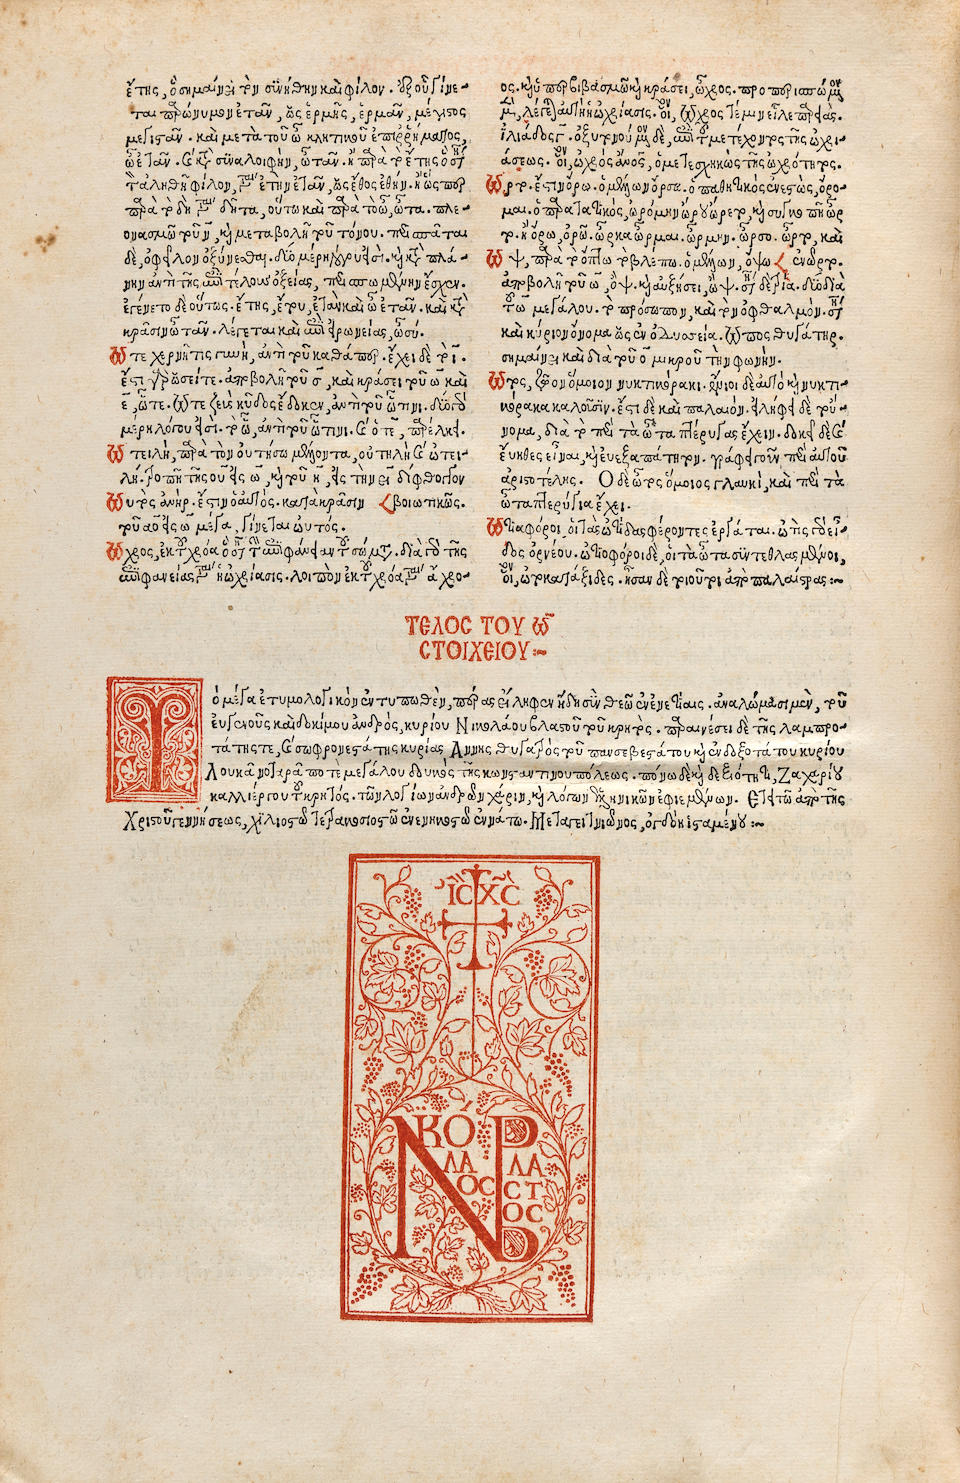 MUSURUS, MARCUS, editor. c.1470-1517. Etymologicum magnum graecum. Venice: Zacharias Callierges for Nicolaus Blastos & Anna Notaras, July 8, 1499.<BR />